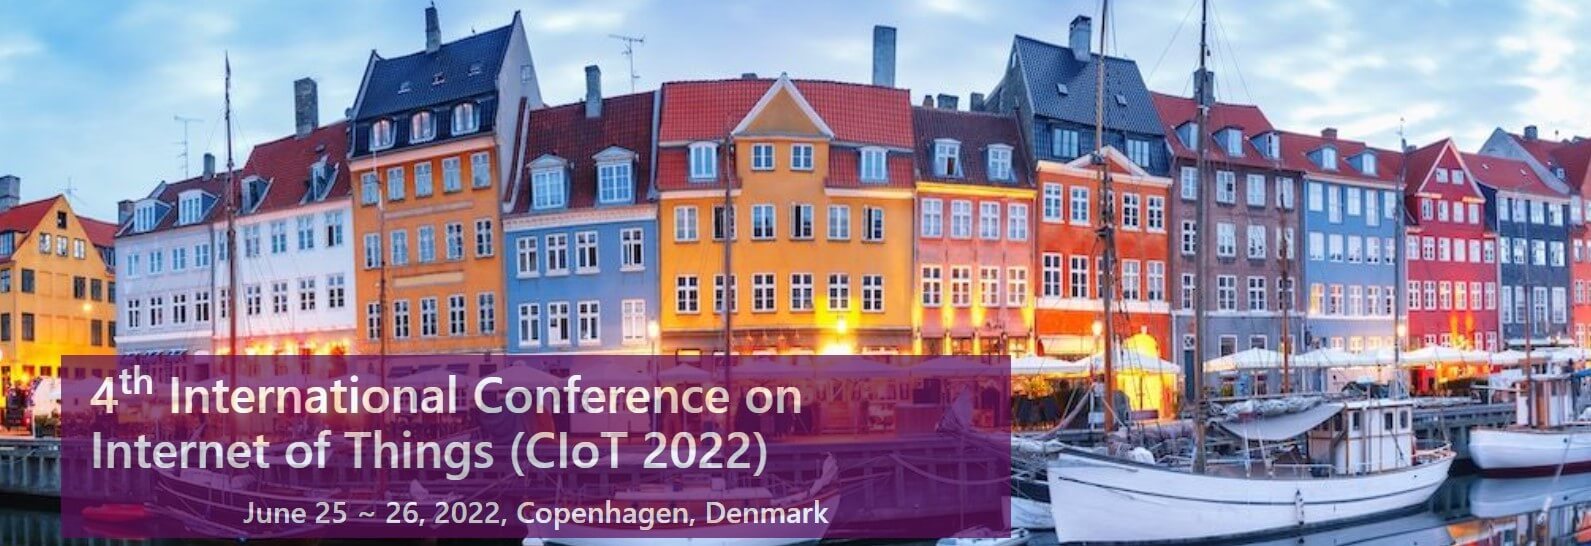 Mezinárodní konference Internetu věcí -. International Conference on Internet of Things (CIoT 2022) - Dánsko